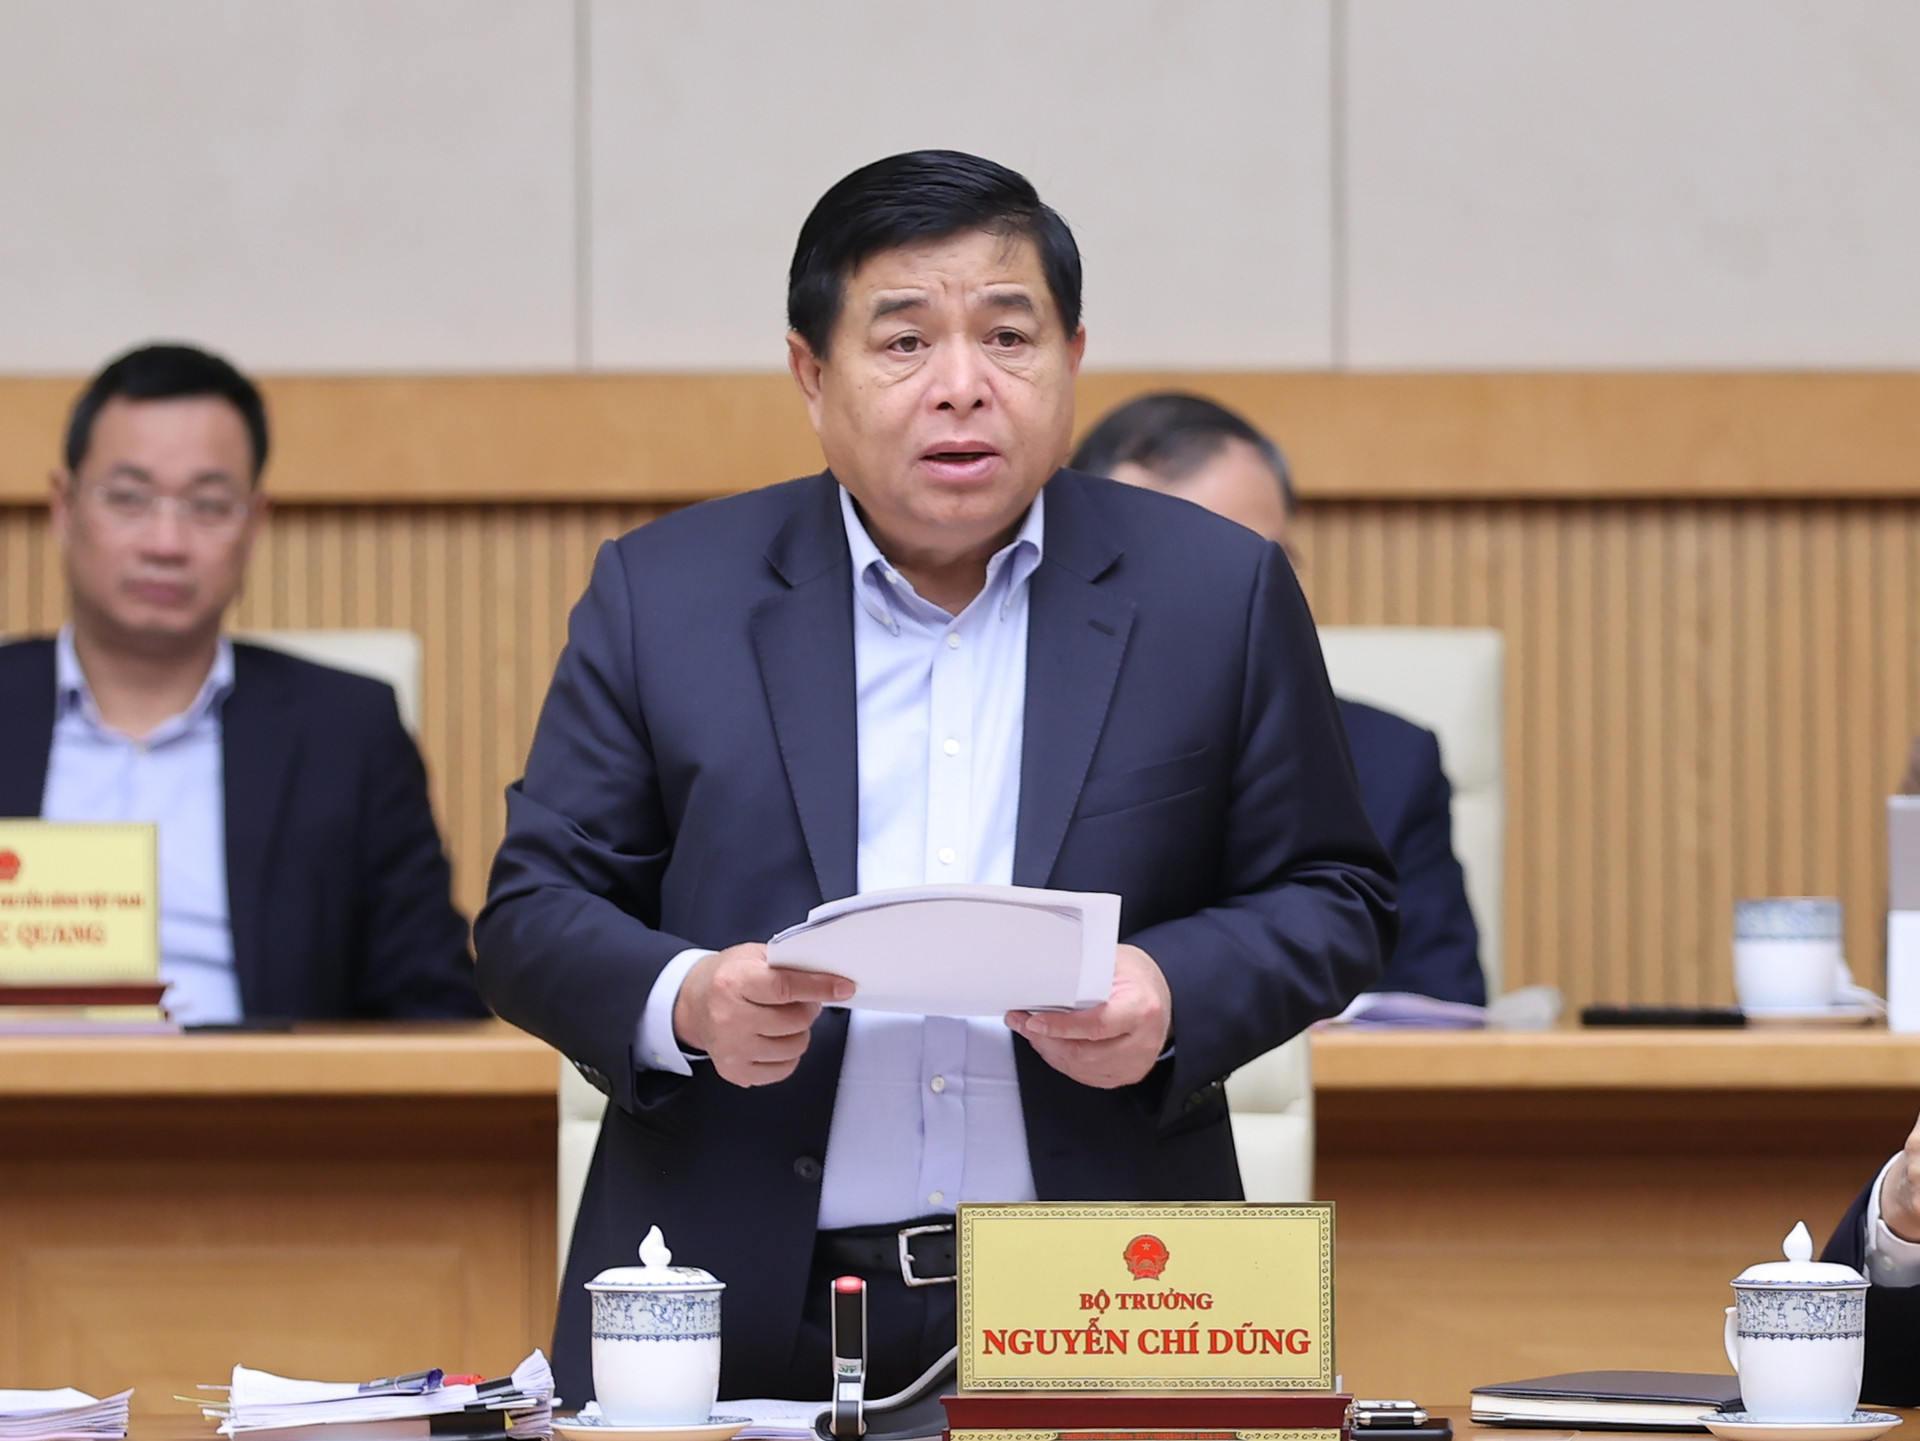 Bộ trưởng Nguyễn Chí Dũng: Kinh tế vĩ mô 2 tháng đầu năm cơ bản ổn định, nền kinh tế tiếp tục phục hồi- Ảnh 1.